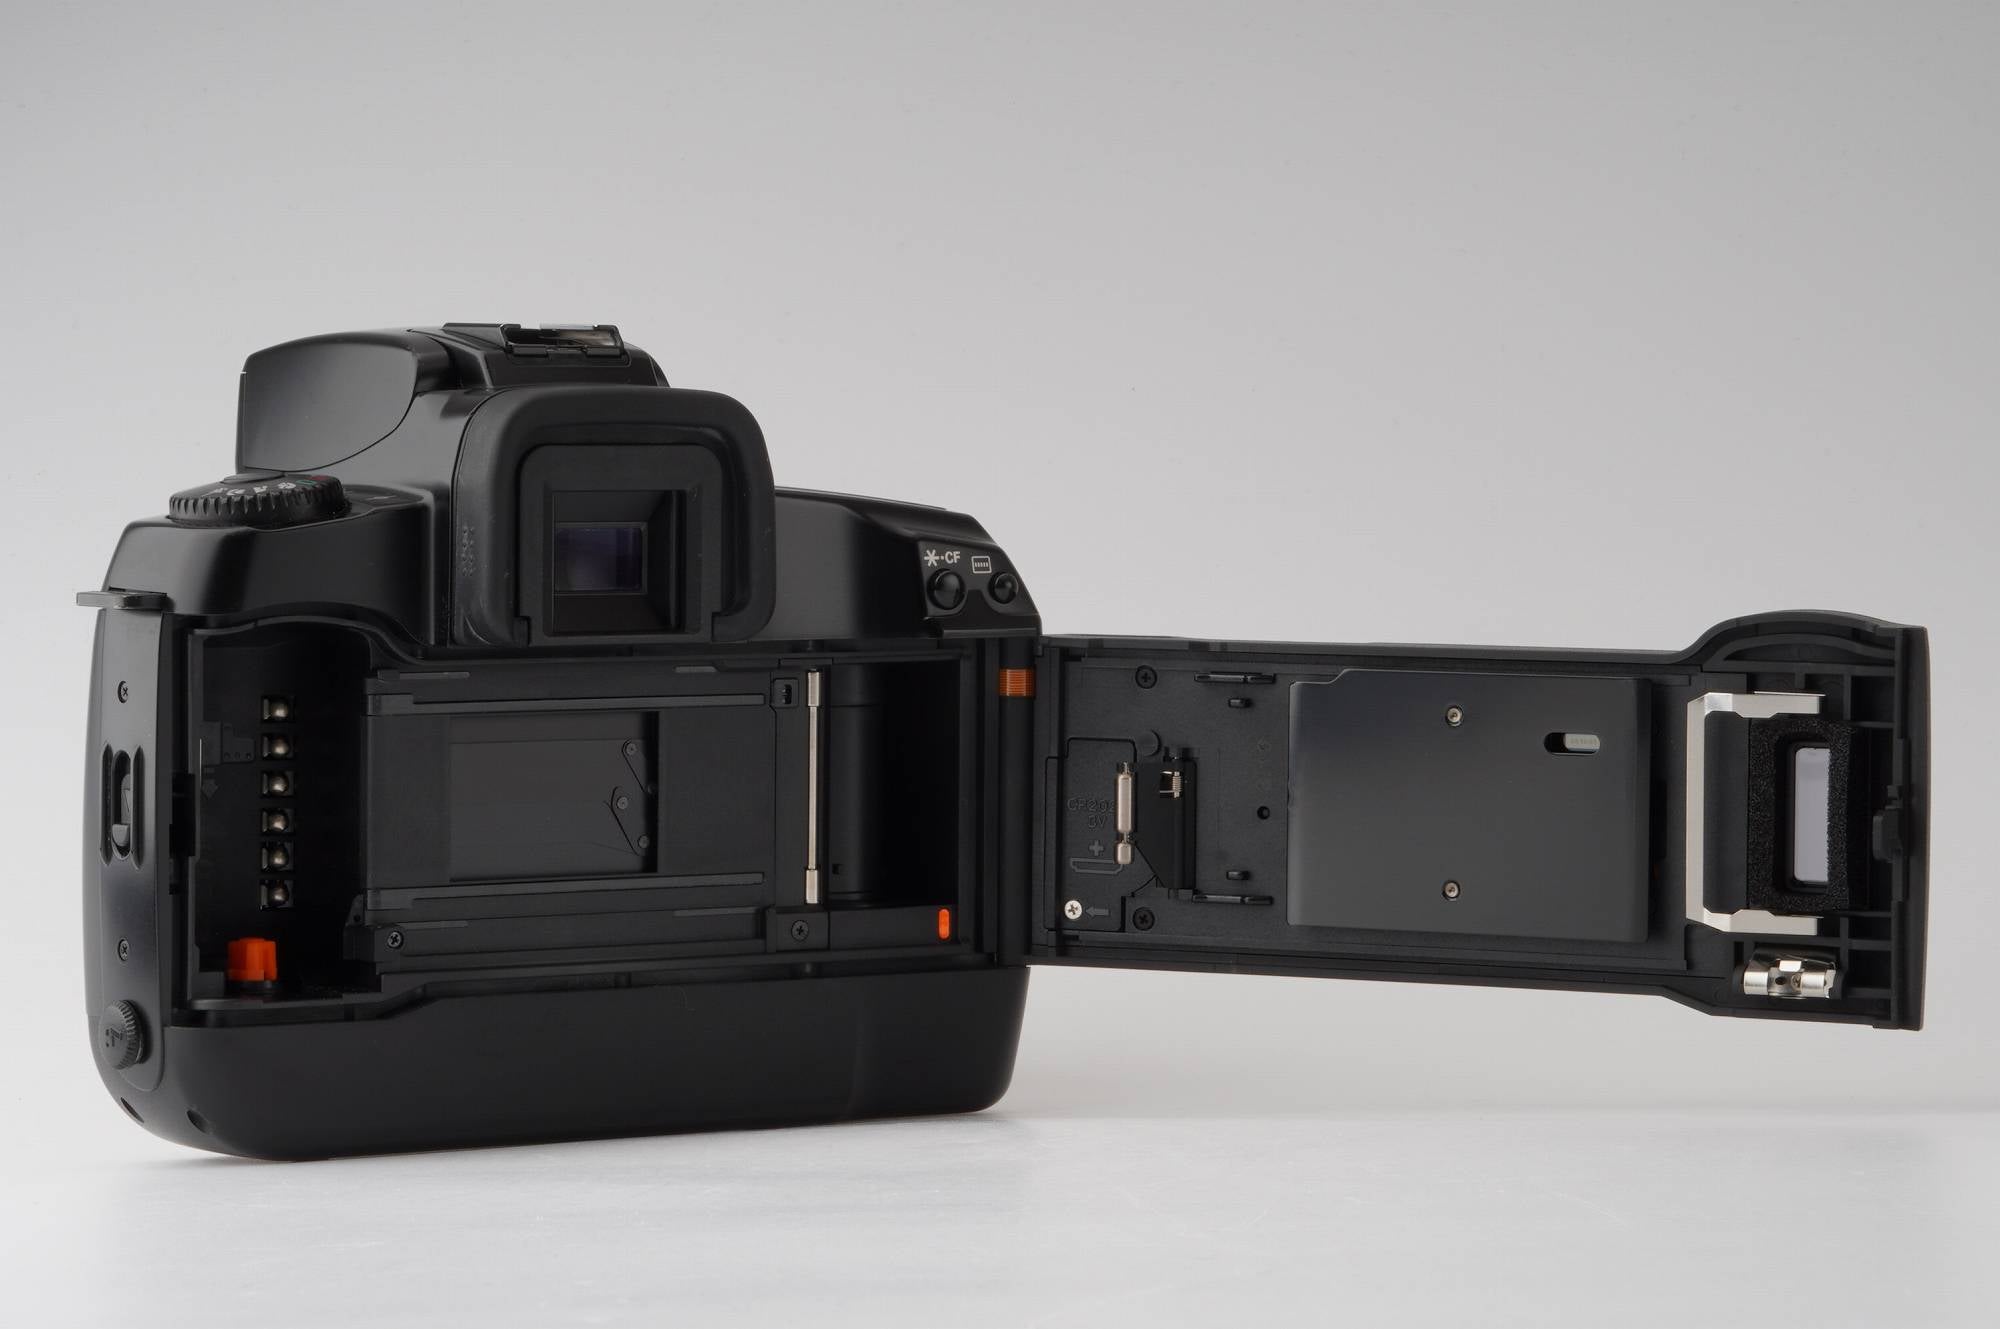 キヤノン Canon EOS 5 一眼レフフィルムカメラ – Natural Camera 